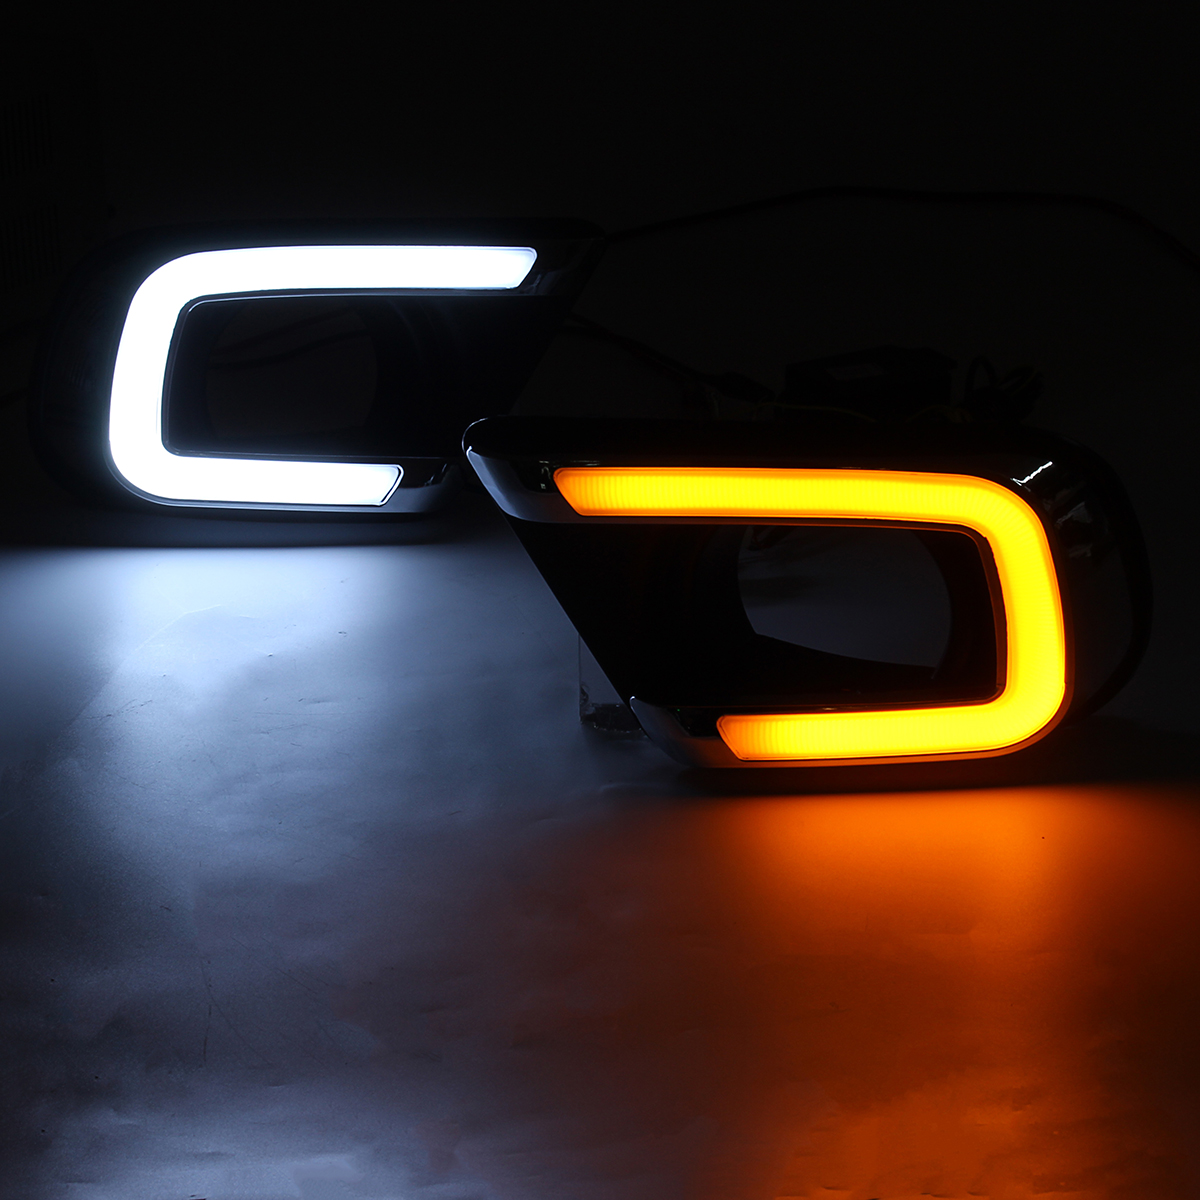 

2 шт. Авто DRL дневные ходовые огни LED Авто указатель поворота Водонепроницаемы лампы белый желтый свет для Dodge Journ